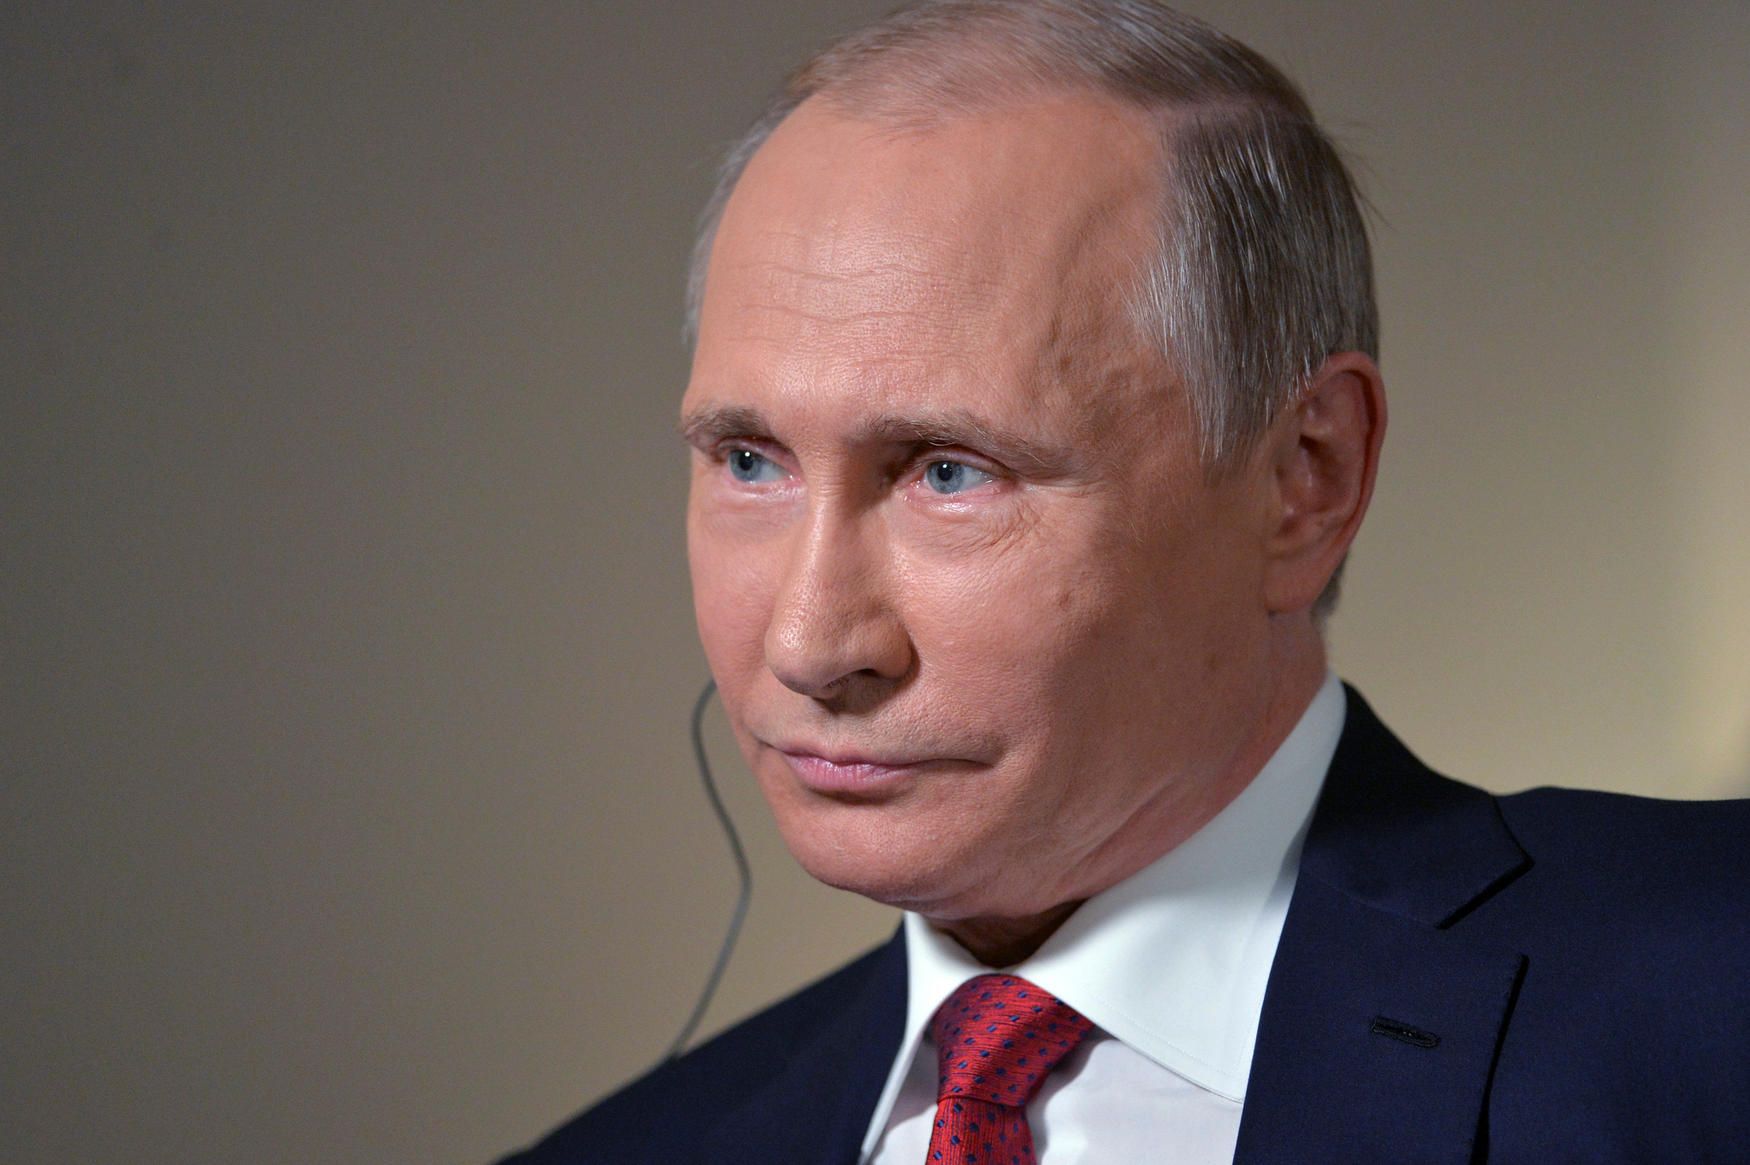 Putin Blasts Trump and Clinton for ‘Shock’ Campaign Tactics